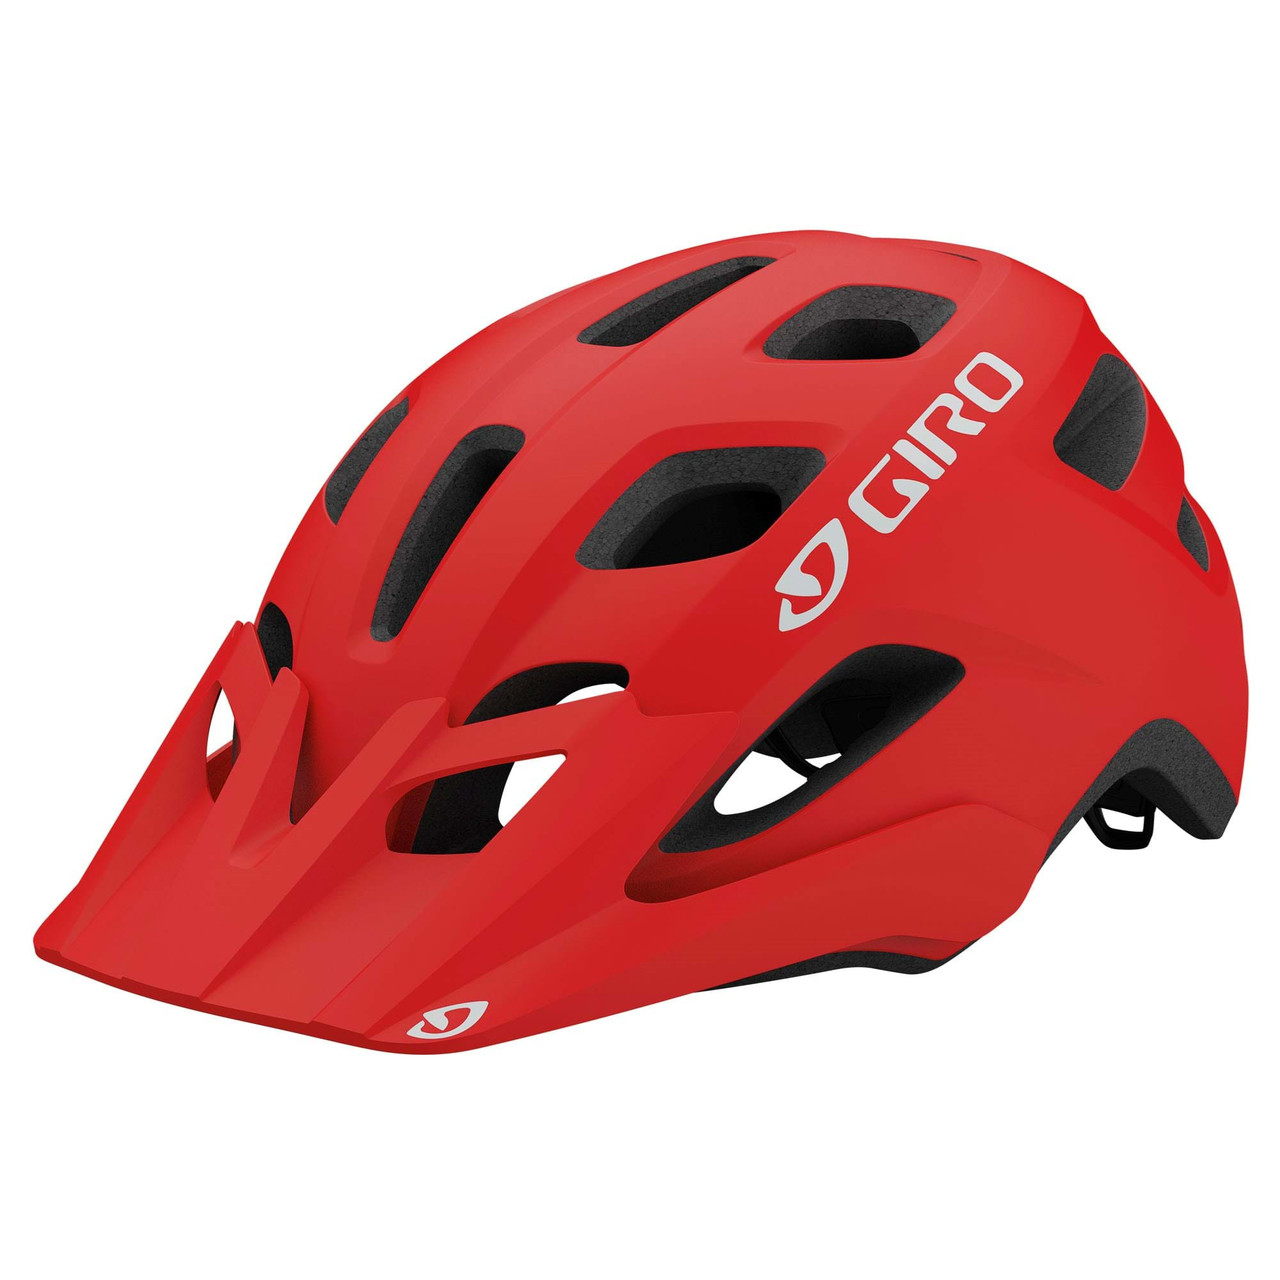 Giro Fixture Helmet in Matte Trim Red